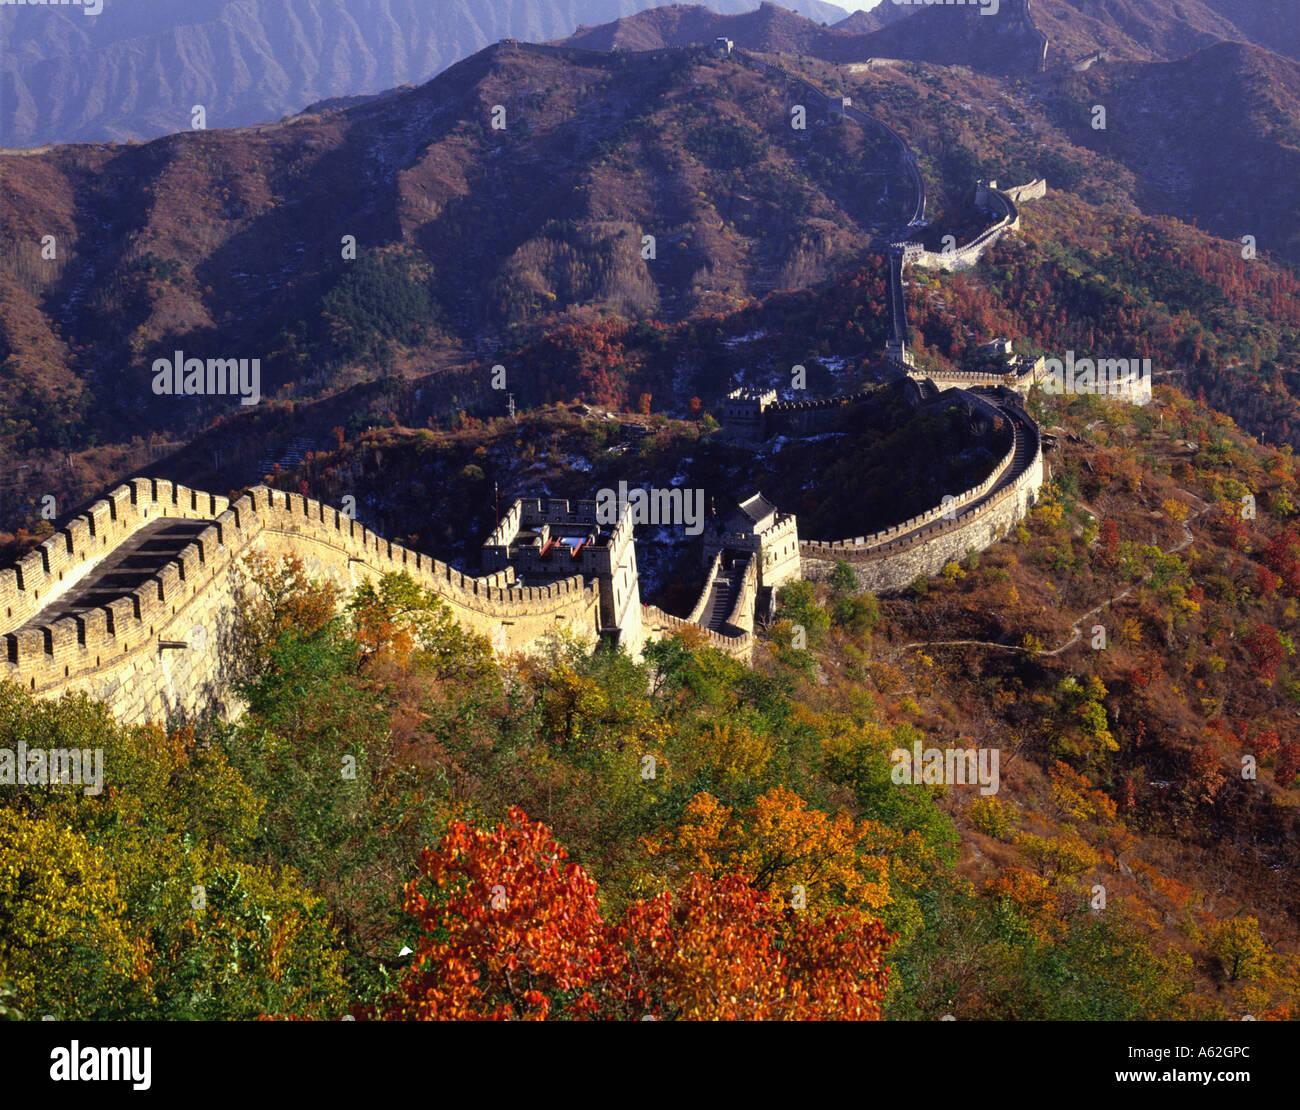 Angolo di alta vista della Grande Muraglia della Cina, la Cina, Asia Foto Stock